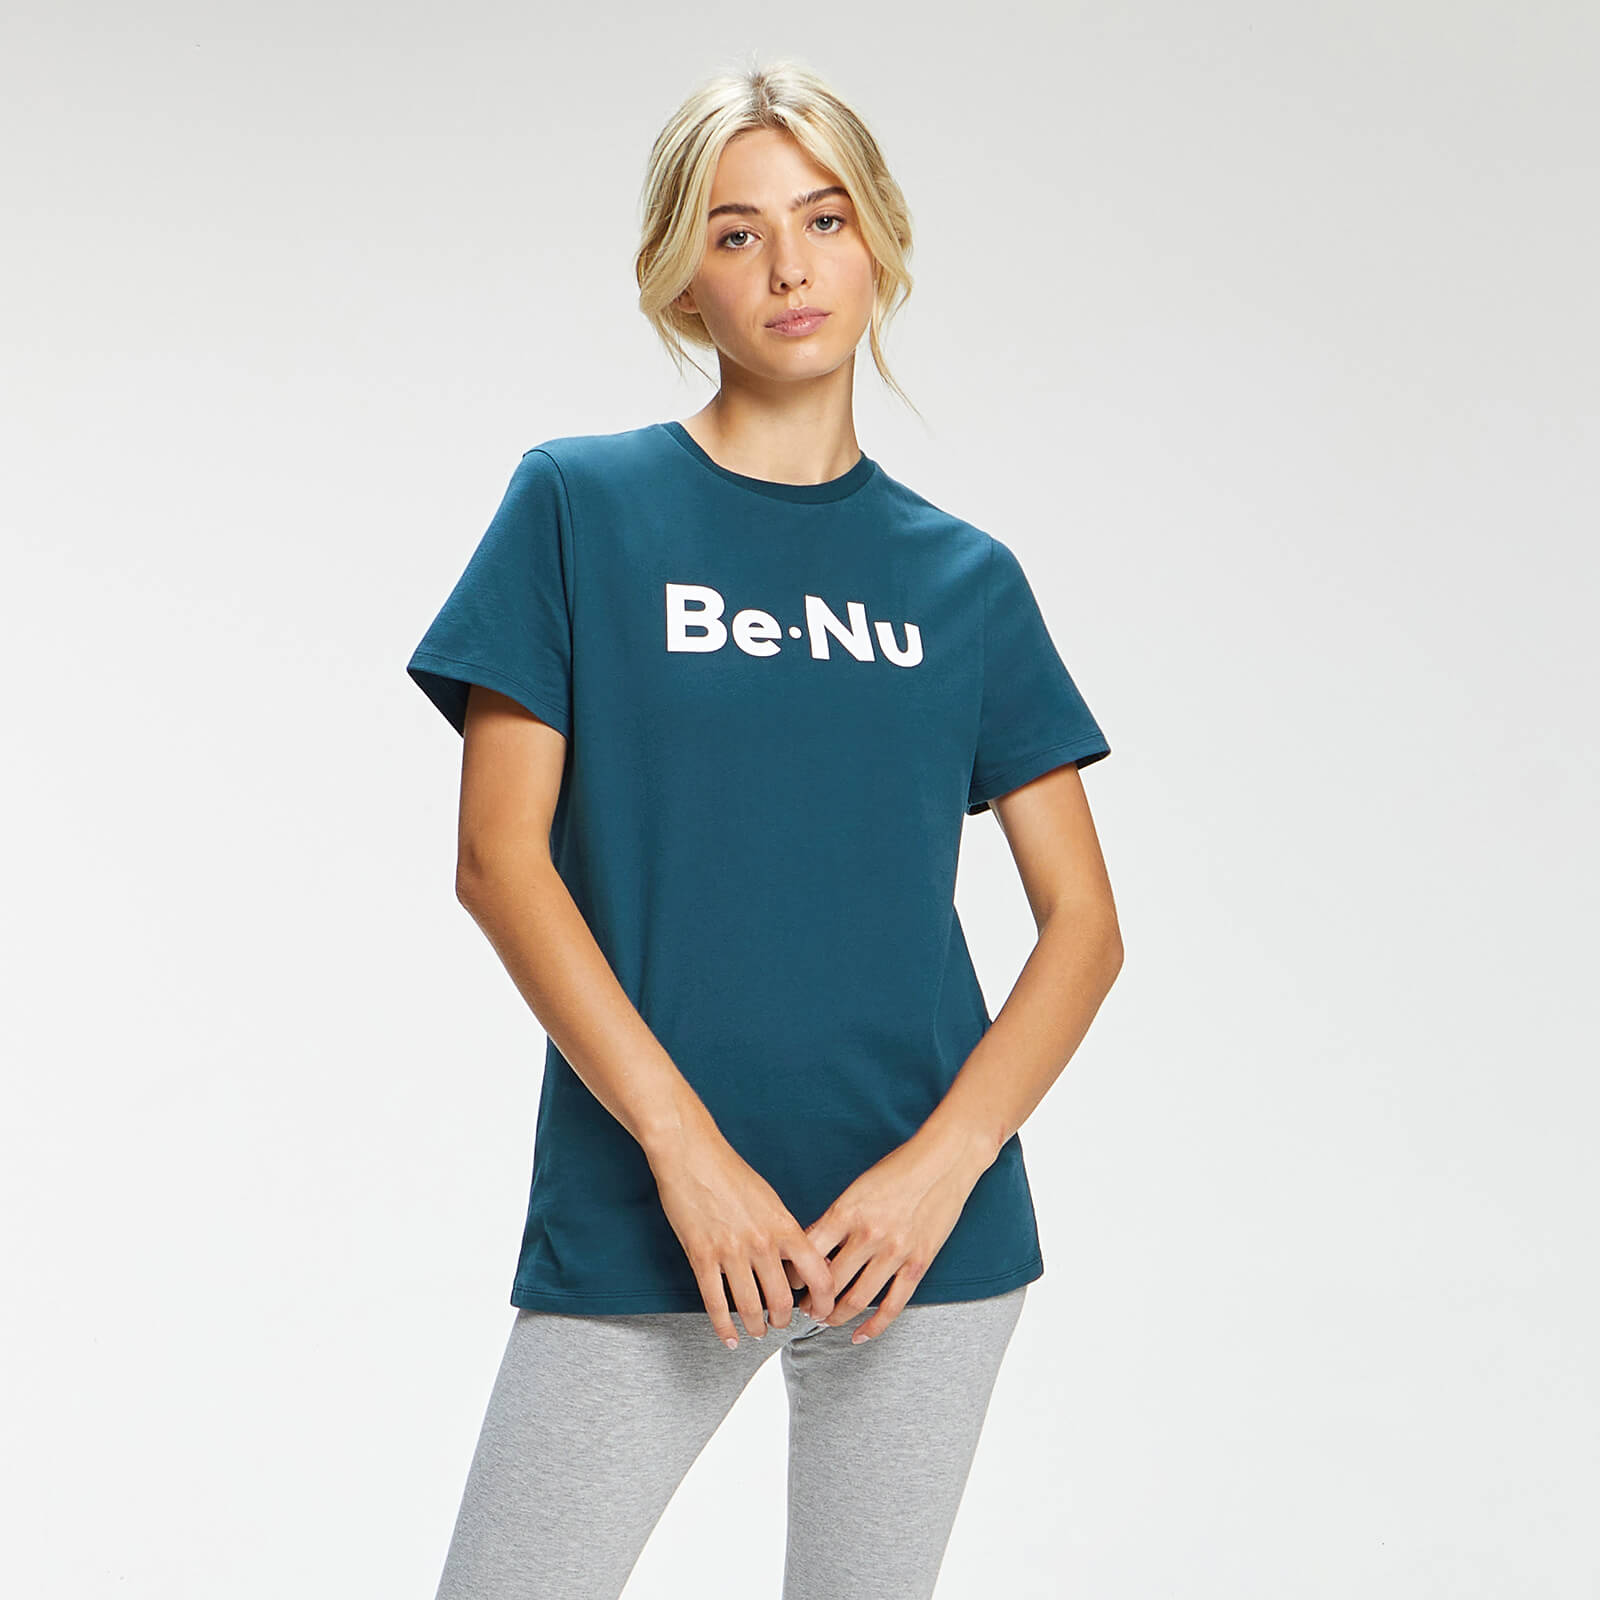 BeNu Women's Short Sleeve T-Shirt - Blue - XS